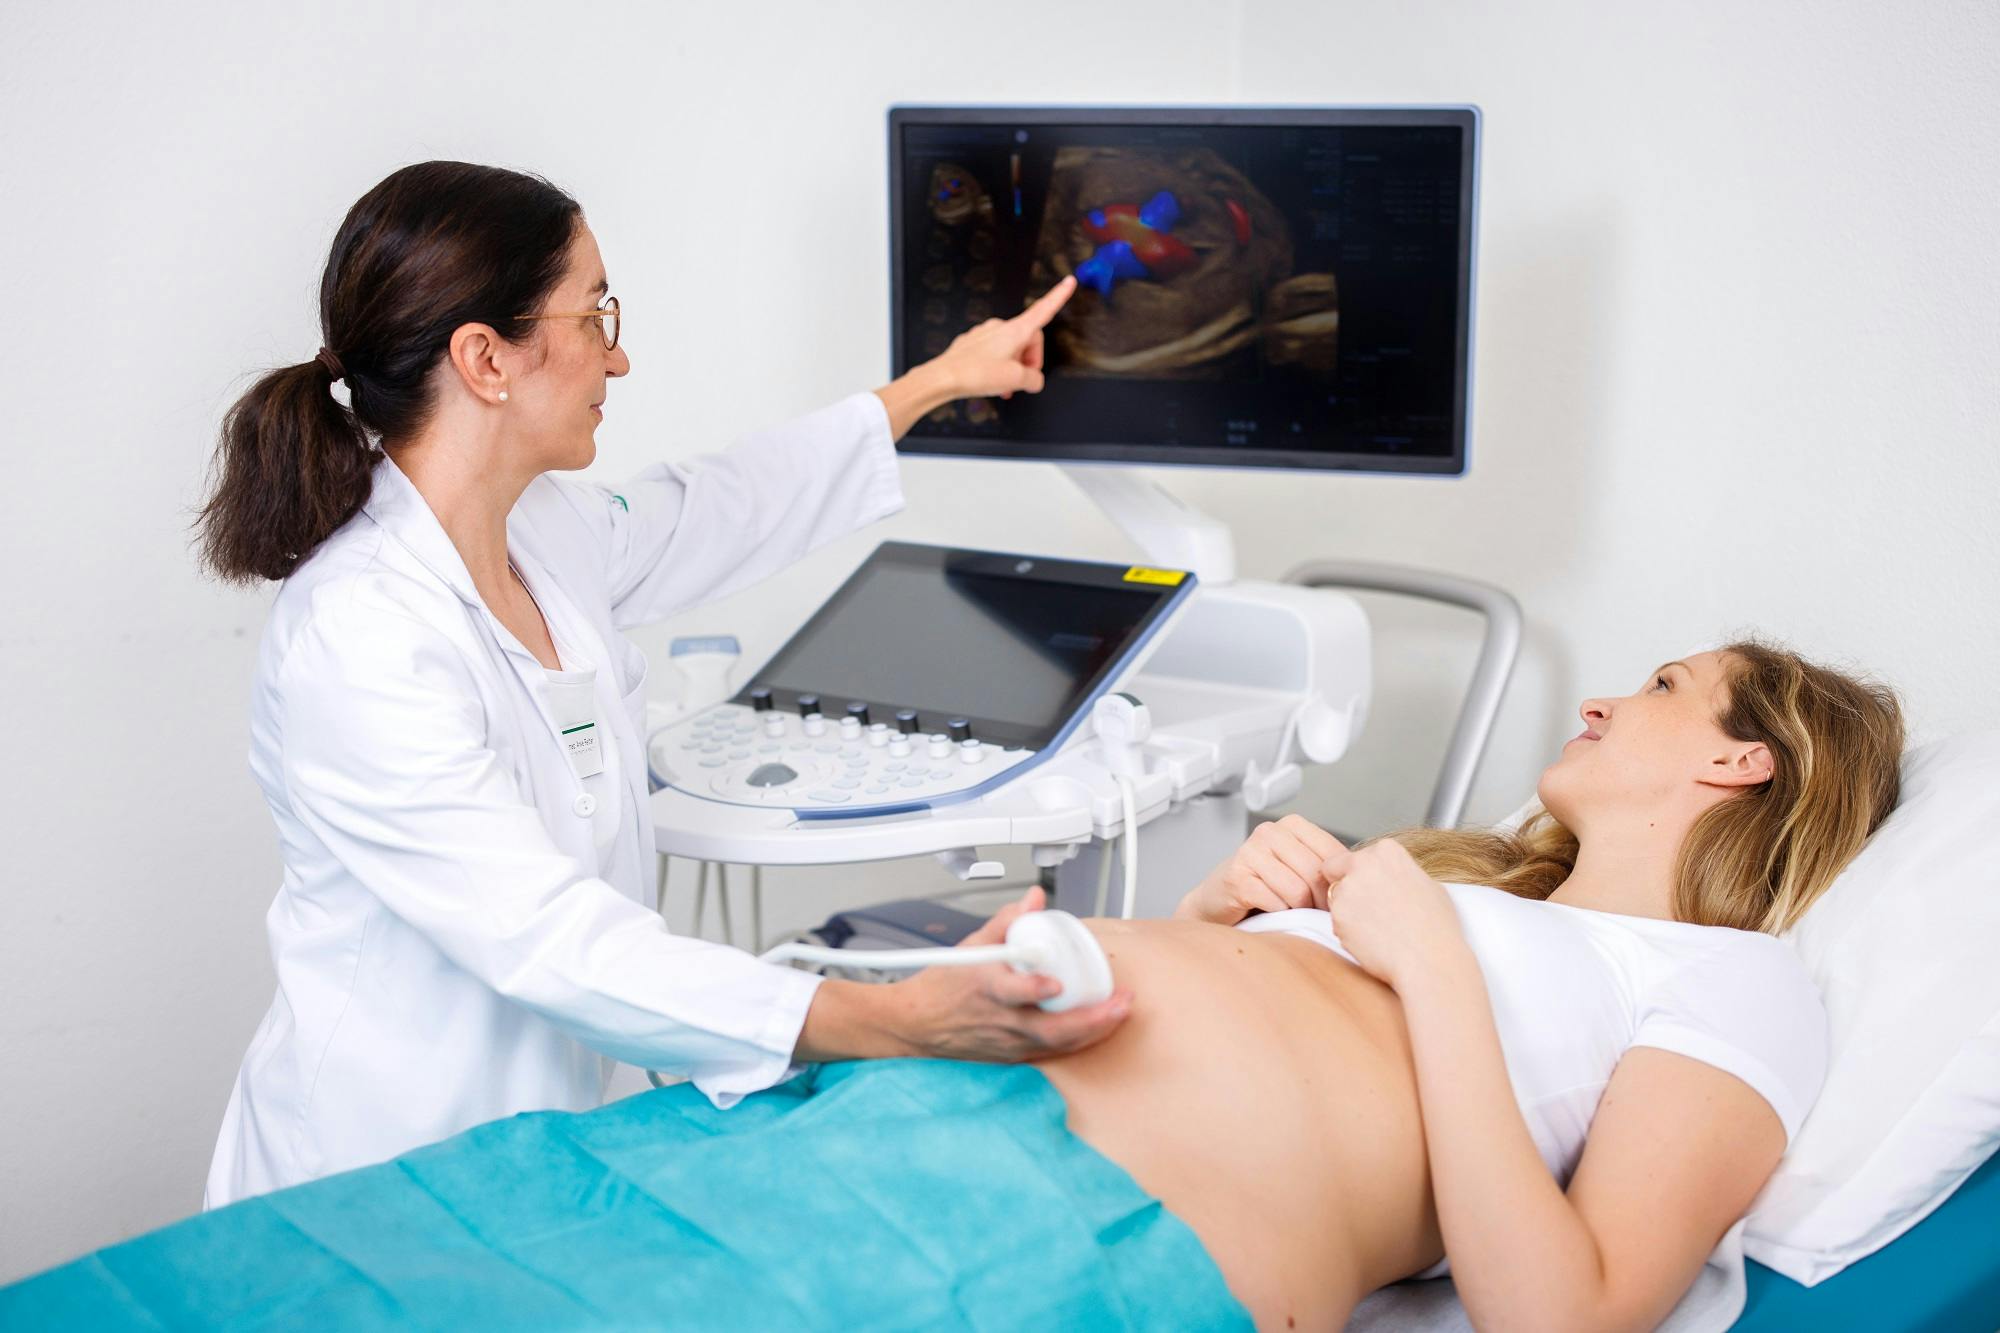 Ärztin führt Ultraschalluntersuchung bei Patientin durch und deutet auf Ultraschallbild am Monitor.